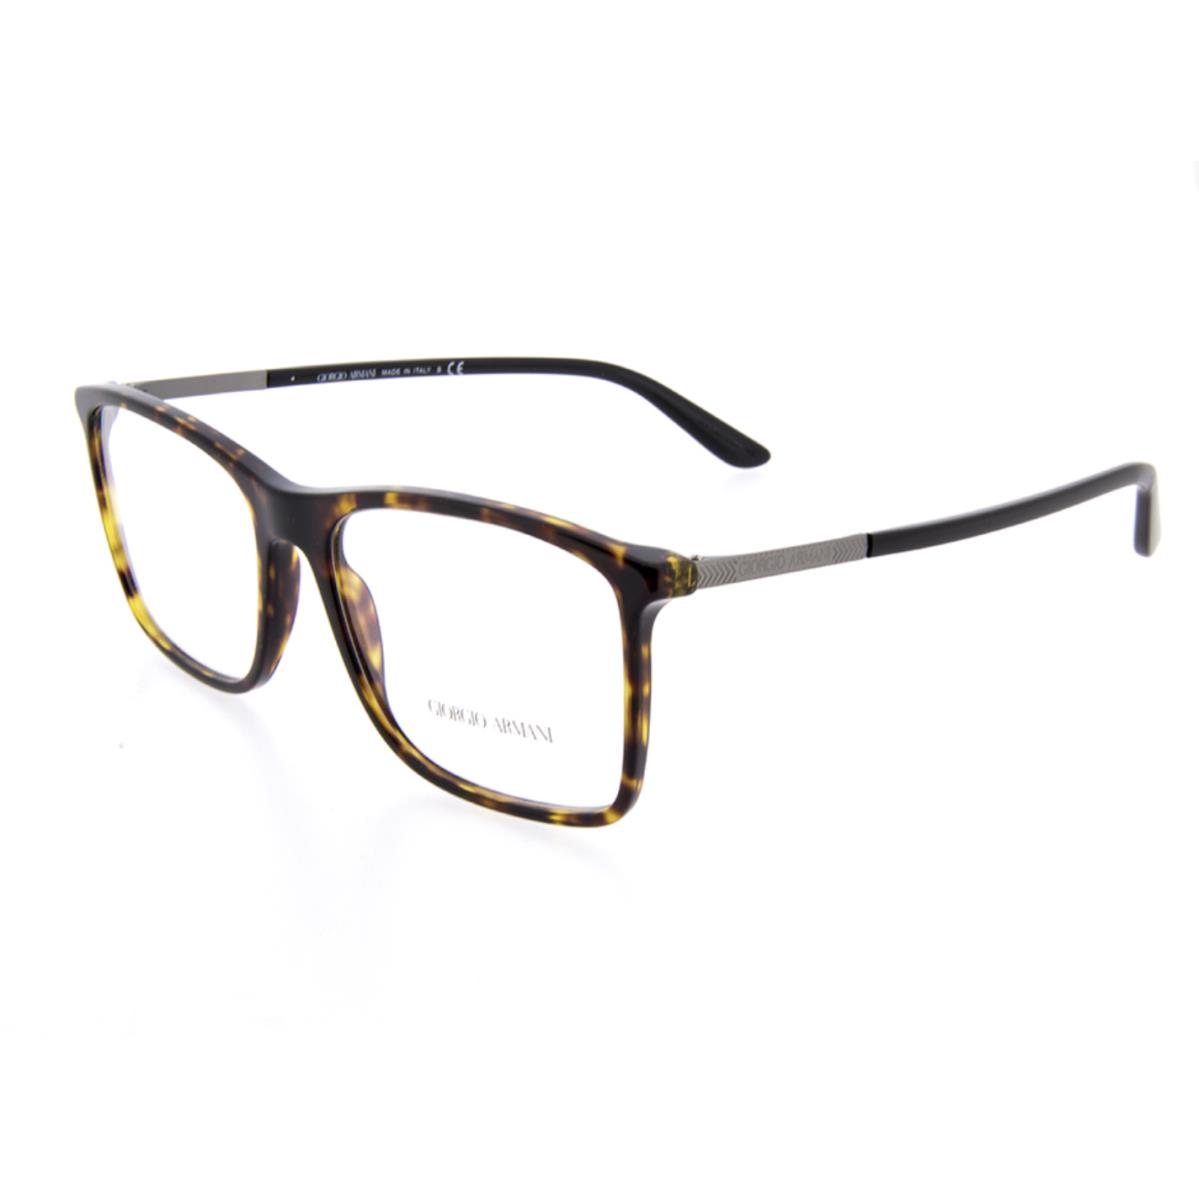 Giorgio Armani eyeglasses  - Tortoise Front with Gunmetal & Black Temples Frame, Demos with GA Print Lens 9